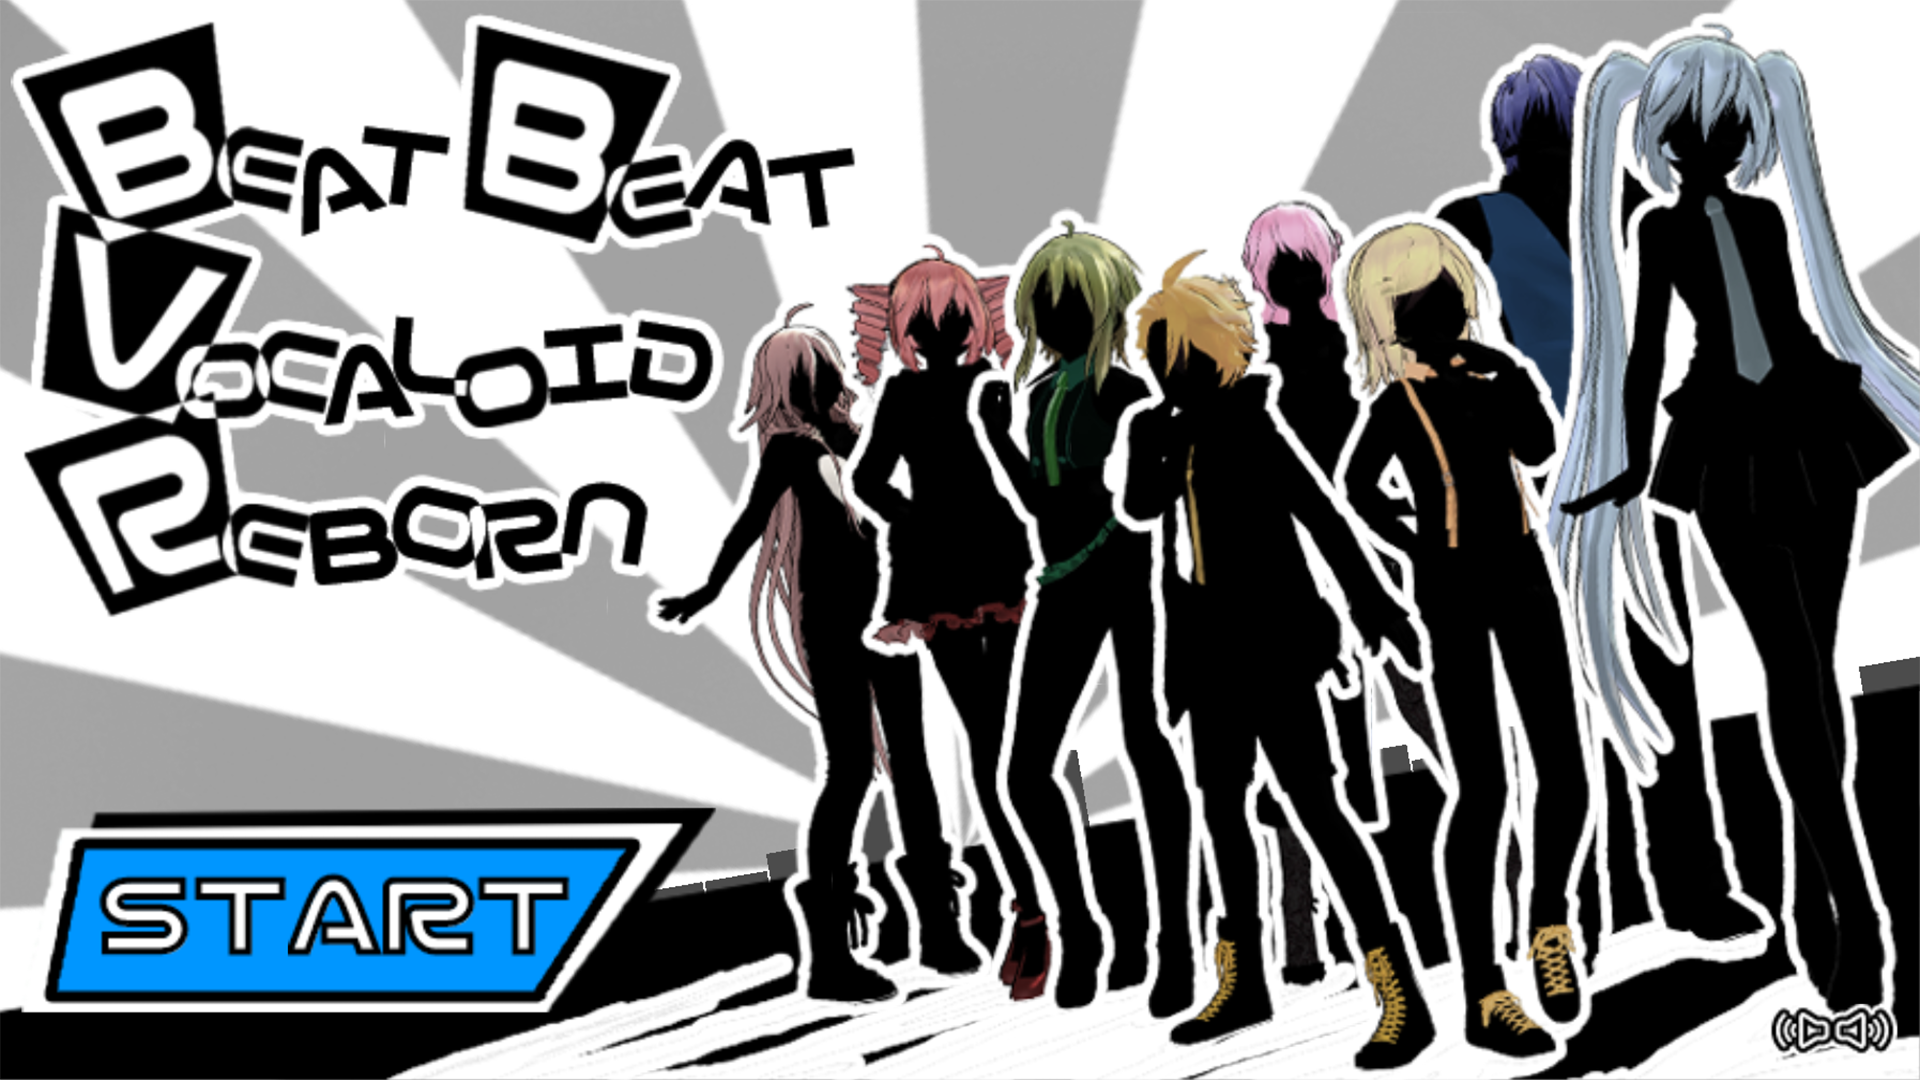 Screenshot 1 of Beat Beat Vocaloid Reborn 